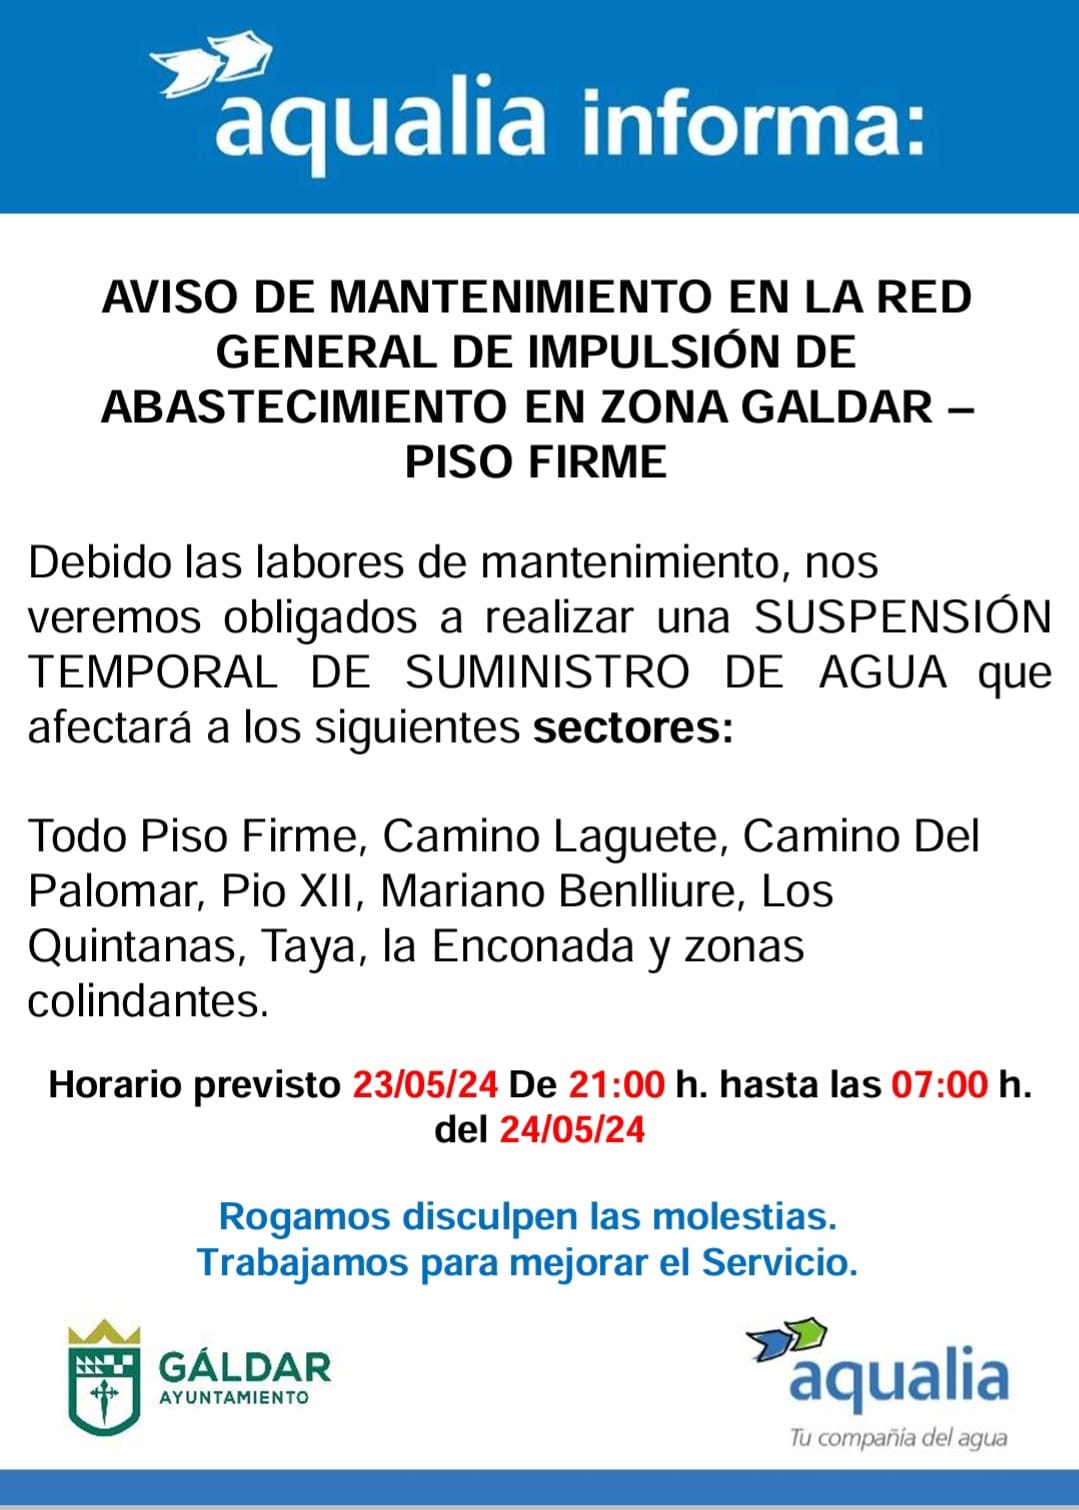 Aqualia informa de una suspensión del suministro en la noche de este jueves en Piso Firme, Los Quintana, La Enconada y zonas colindantes